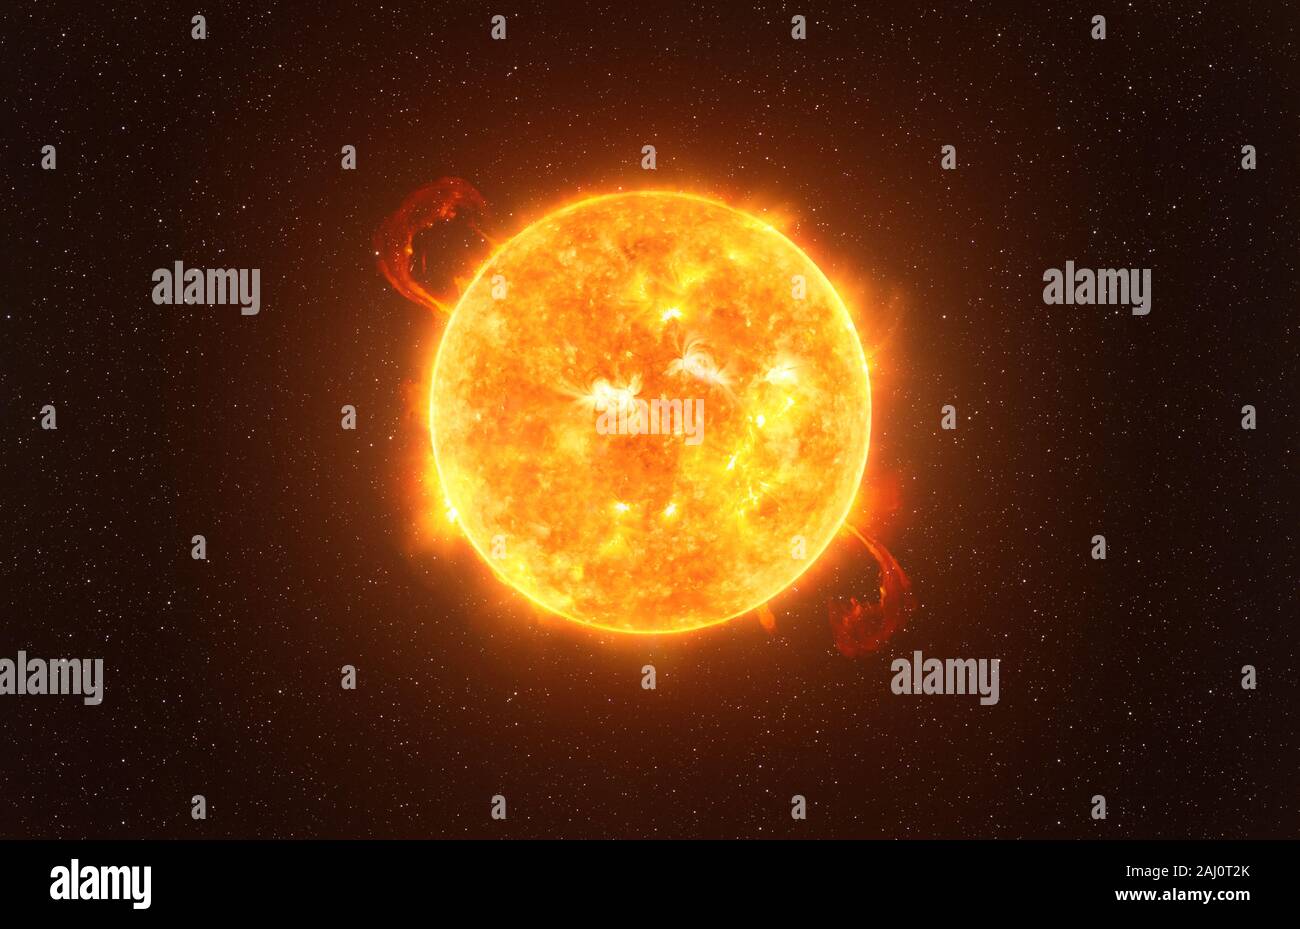 Betelguese star contre starry sky vision artistique, des éléments de cette image fournie par la NASA Banque D'Images